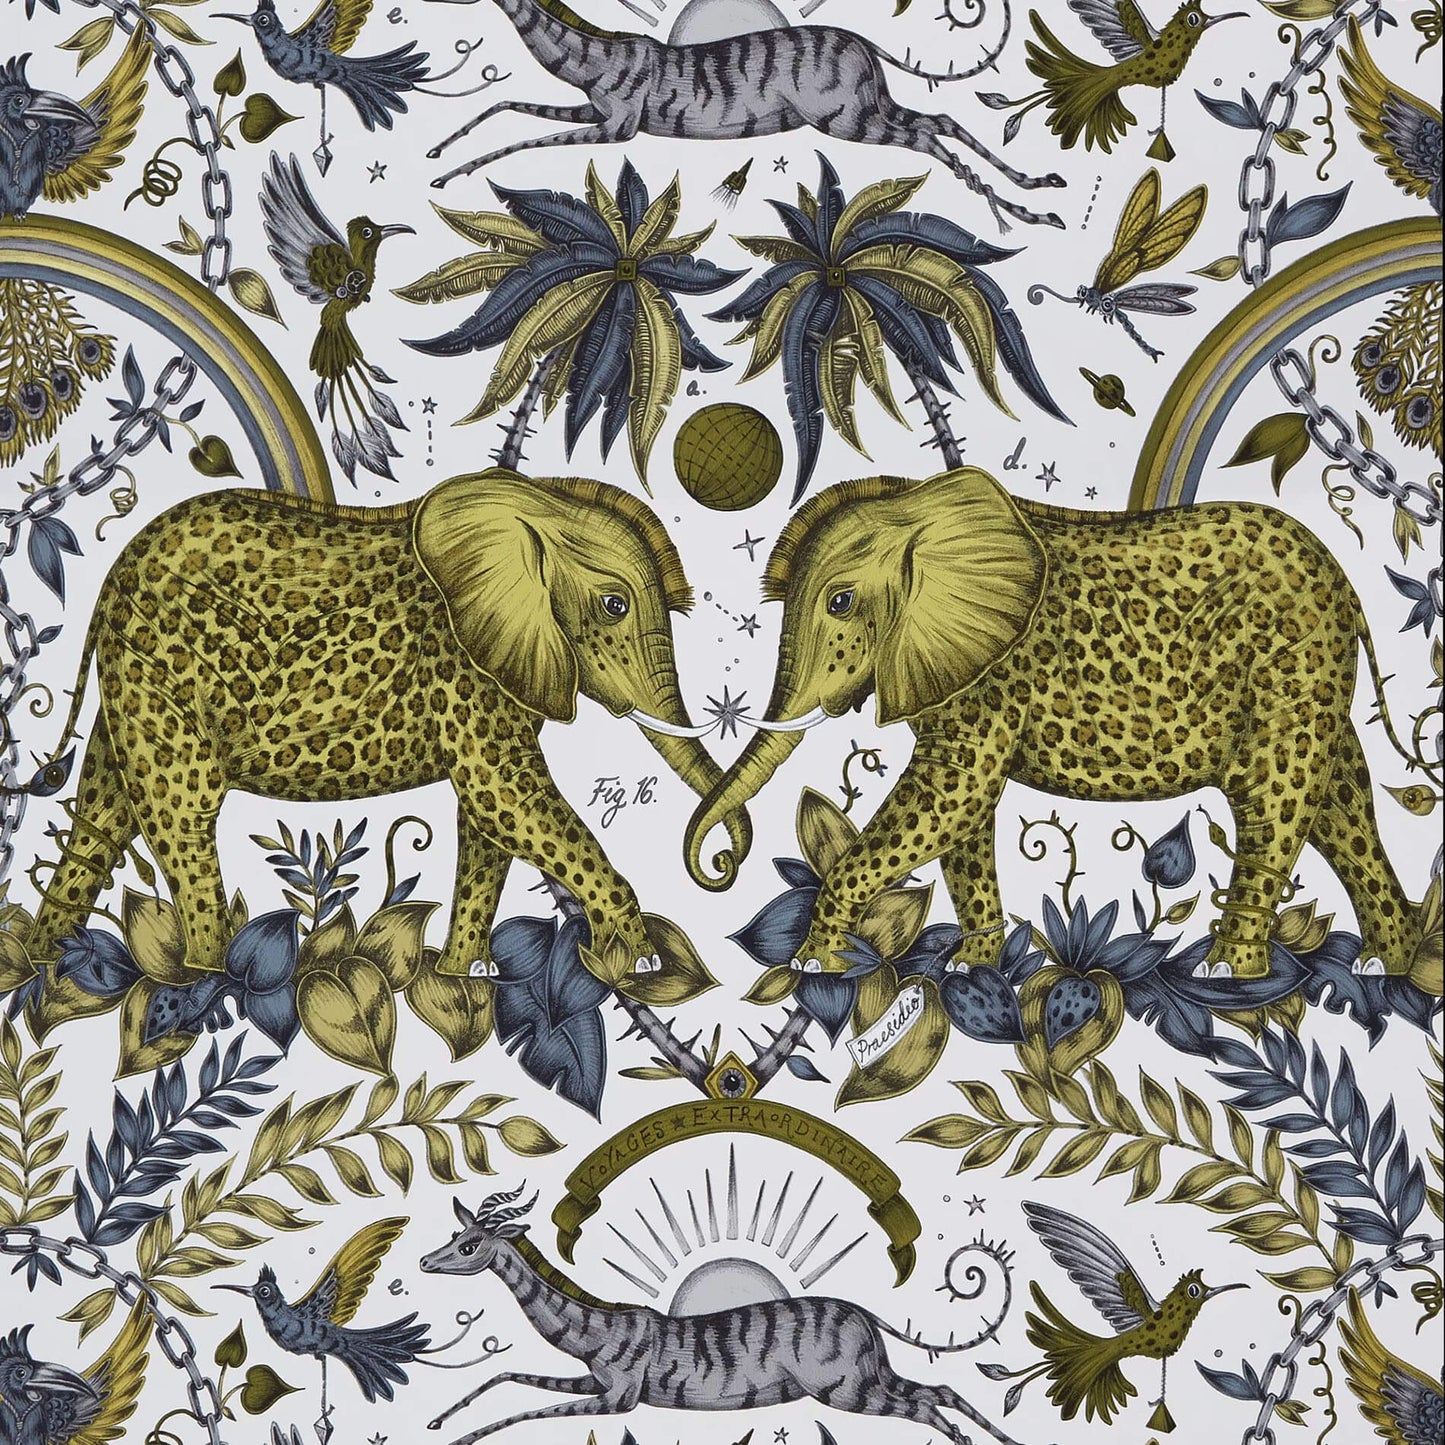 Clarke & Clarke Wilderie Zambezi Wallpaper - Gold